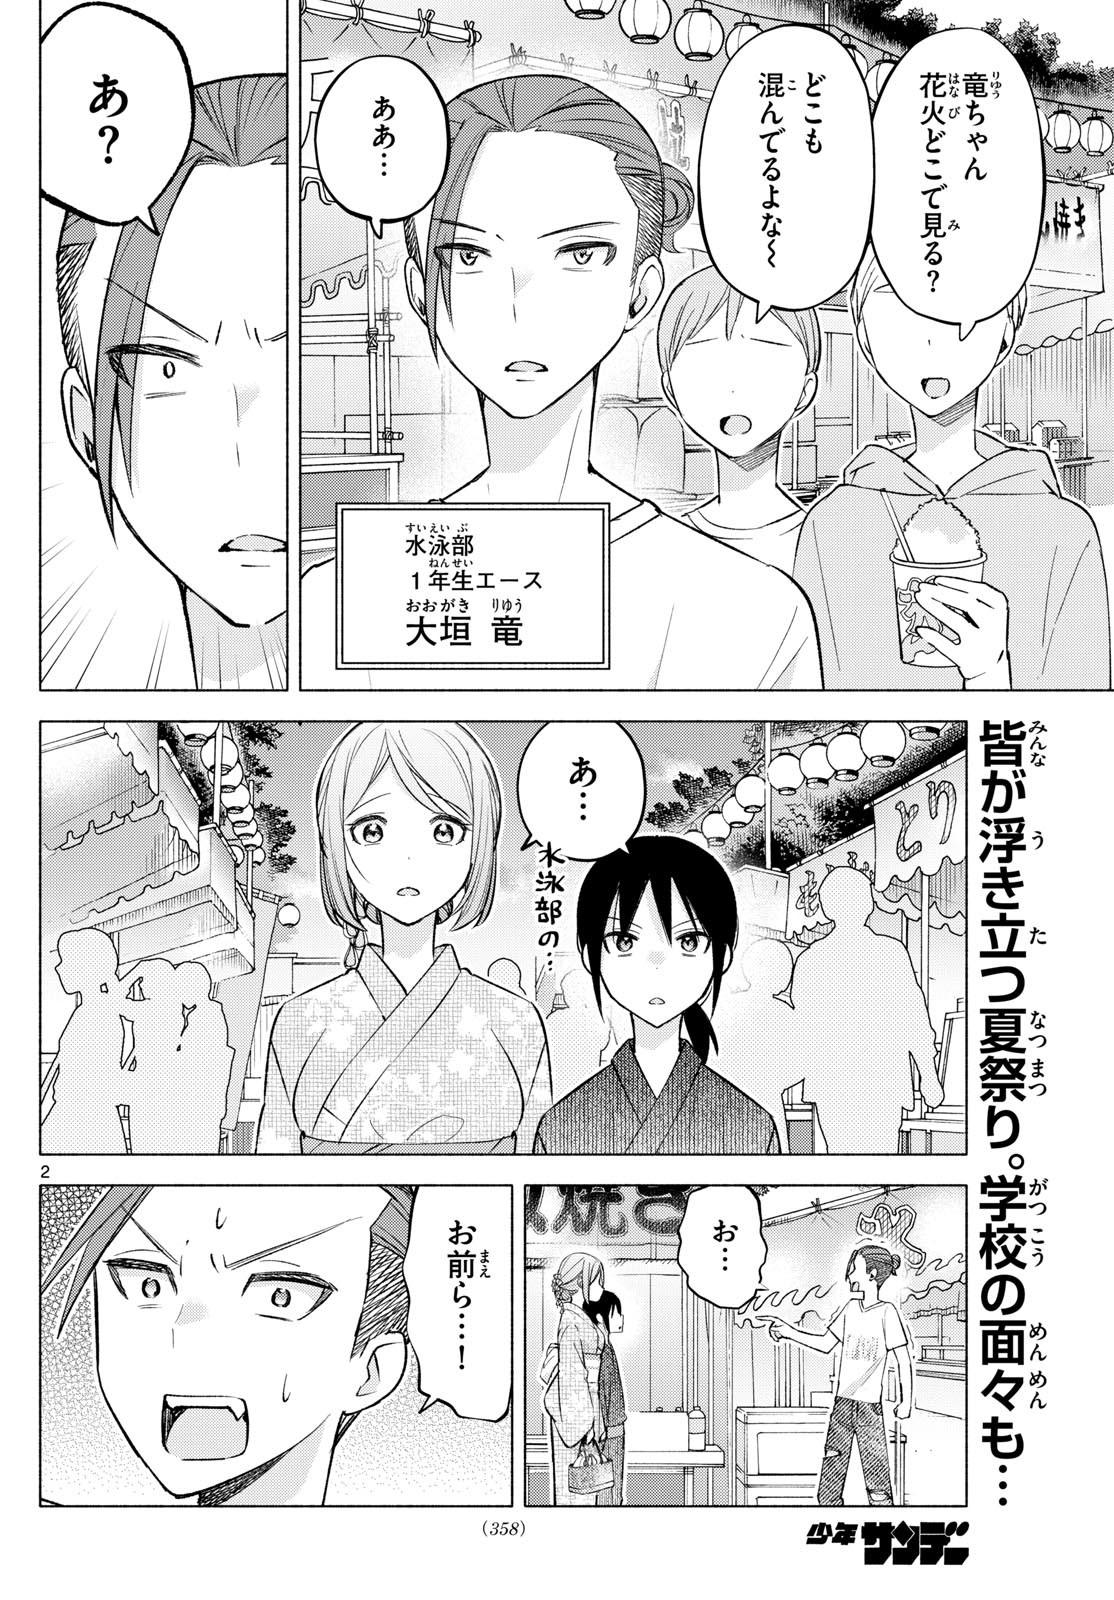 Kimi to Warui Koto ga Shitai - Chapter 047 - Page 2